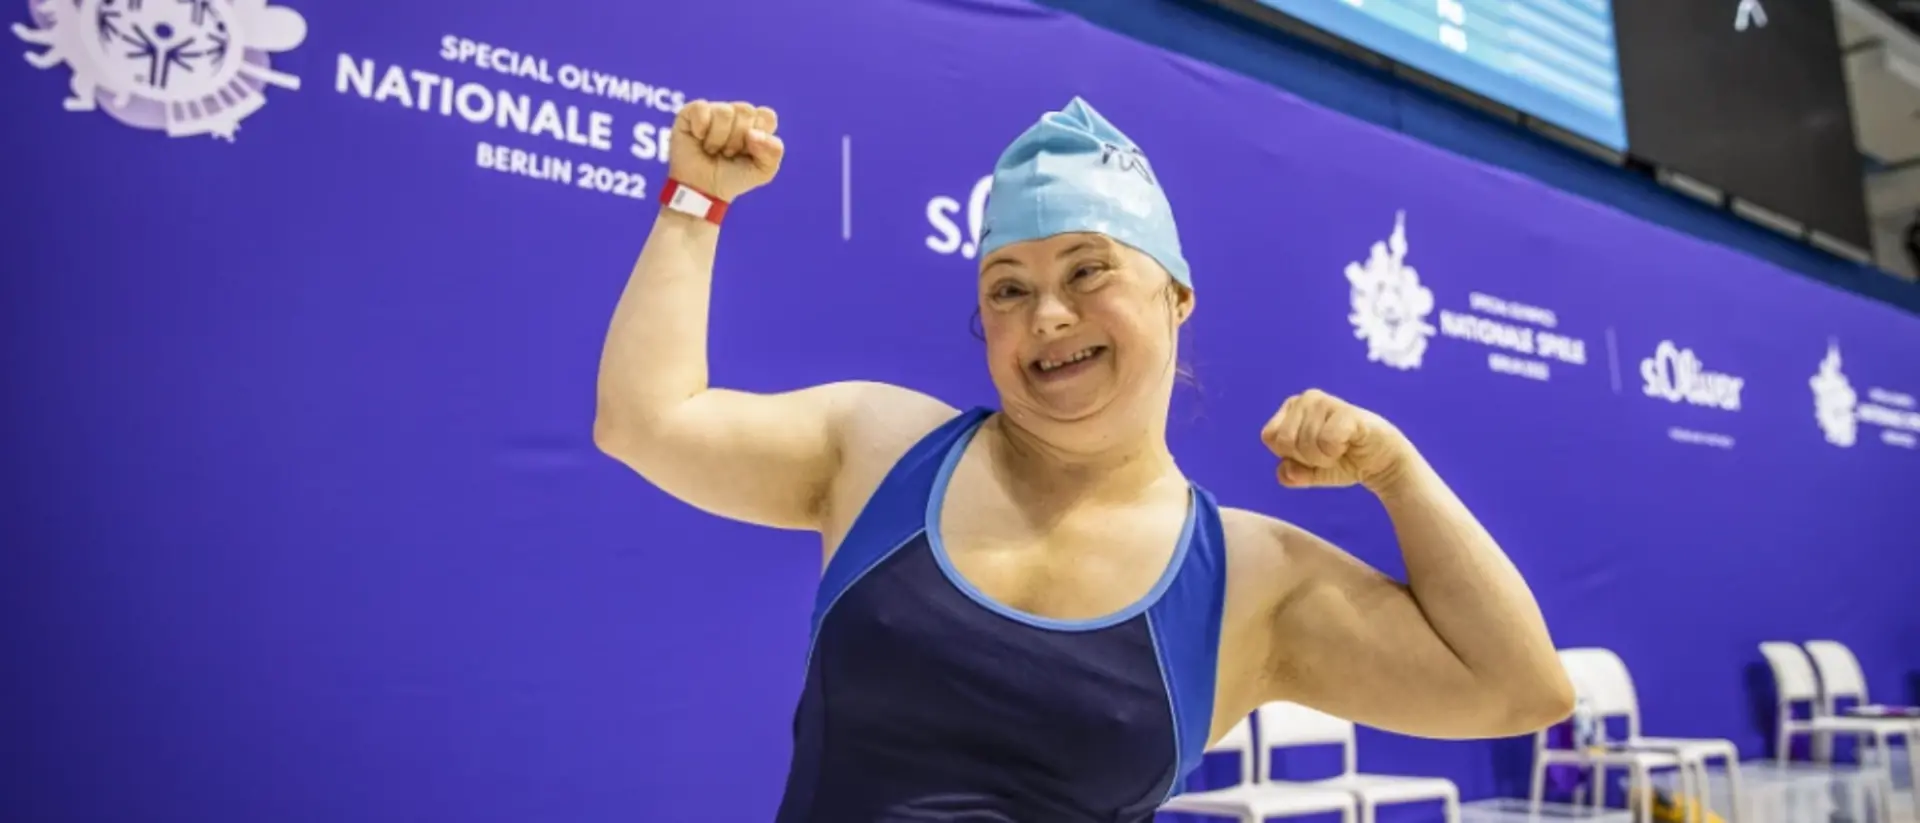 Eine Schwimmerin, die bei den Special Olympic teilnimmt, schaut jubelnd in die Kamera.